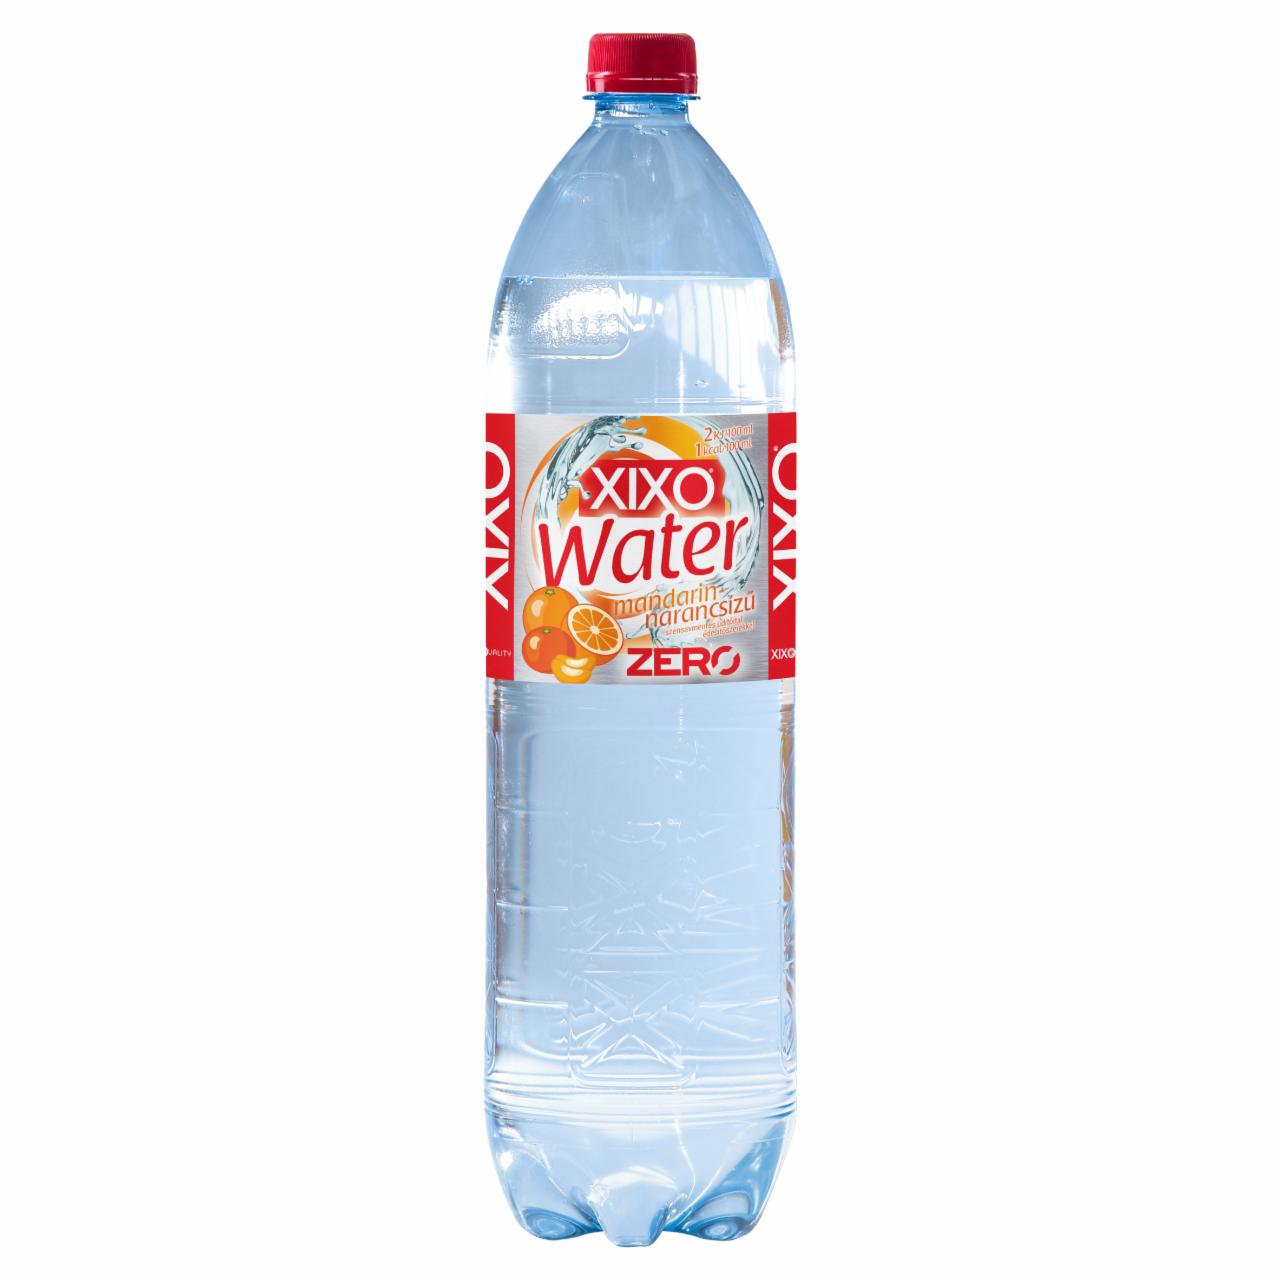 Képek - XIXO Water Zero mandarin-narancsízű szénsavmentes üdítőital édesítőszerekkel 1,5 l